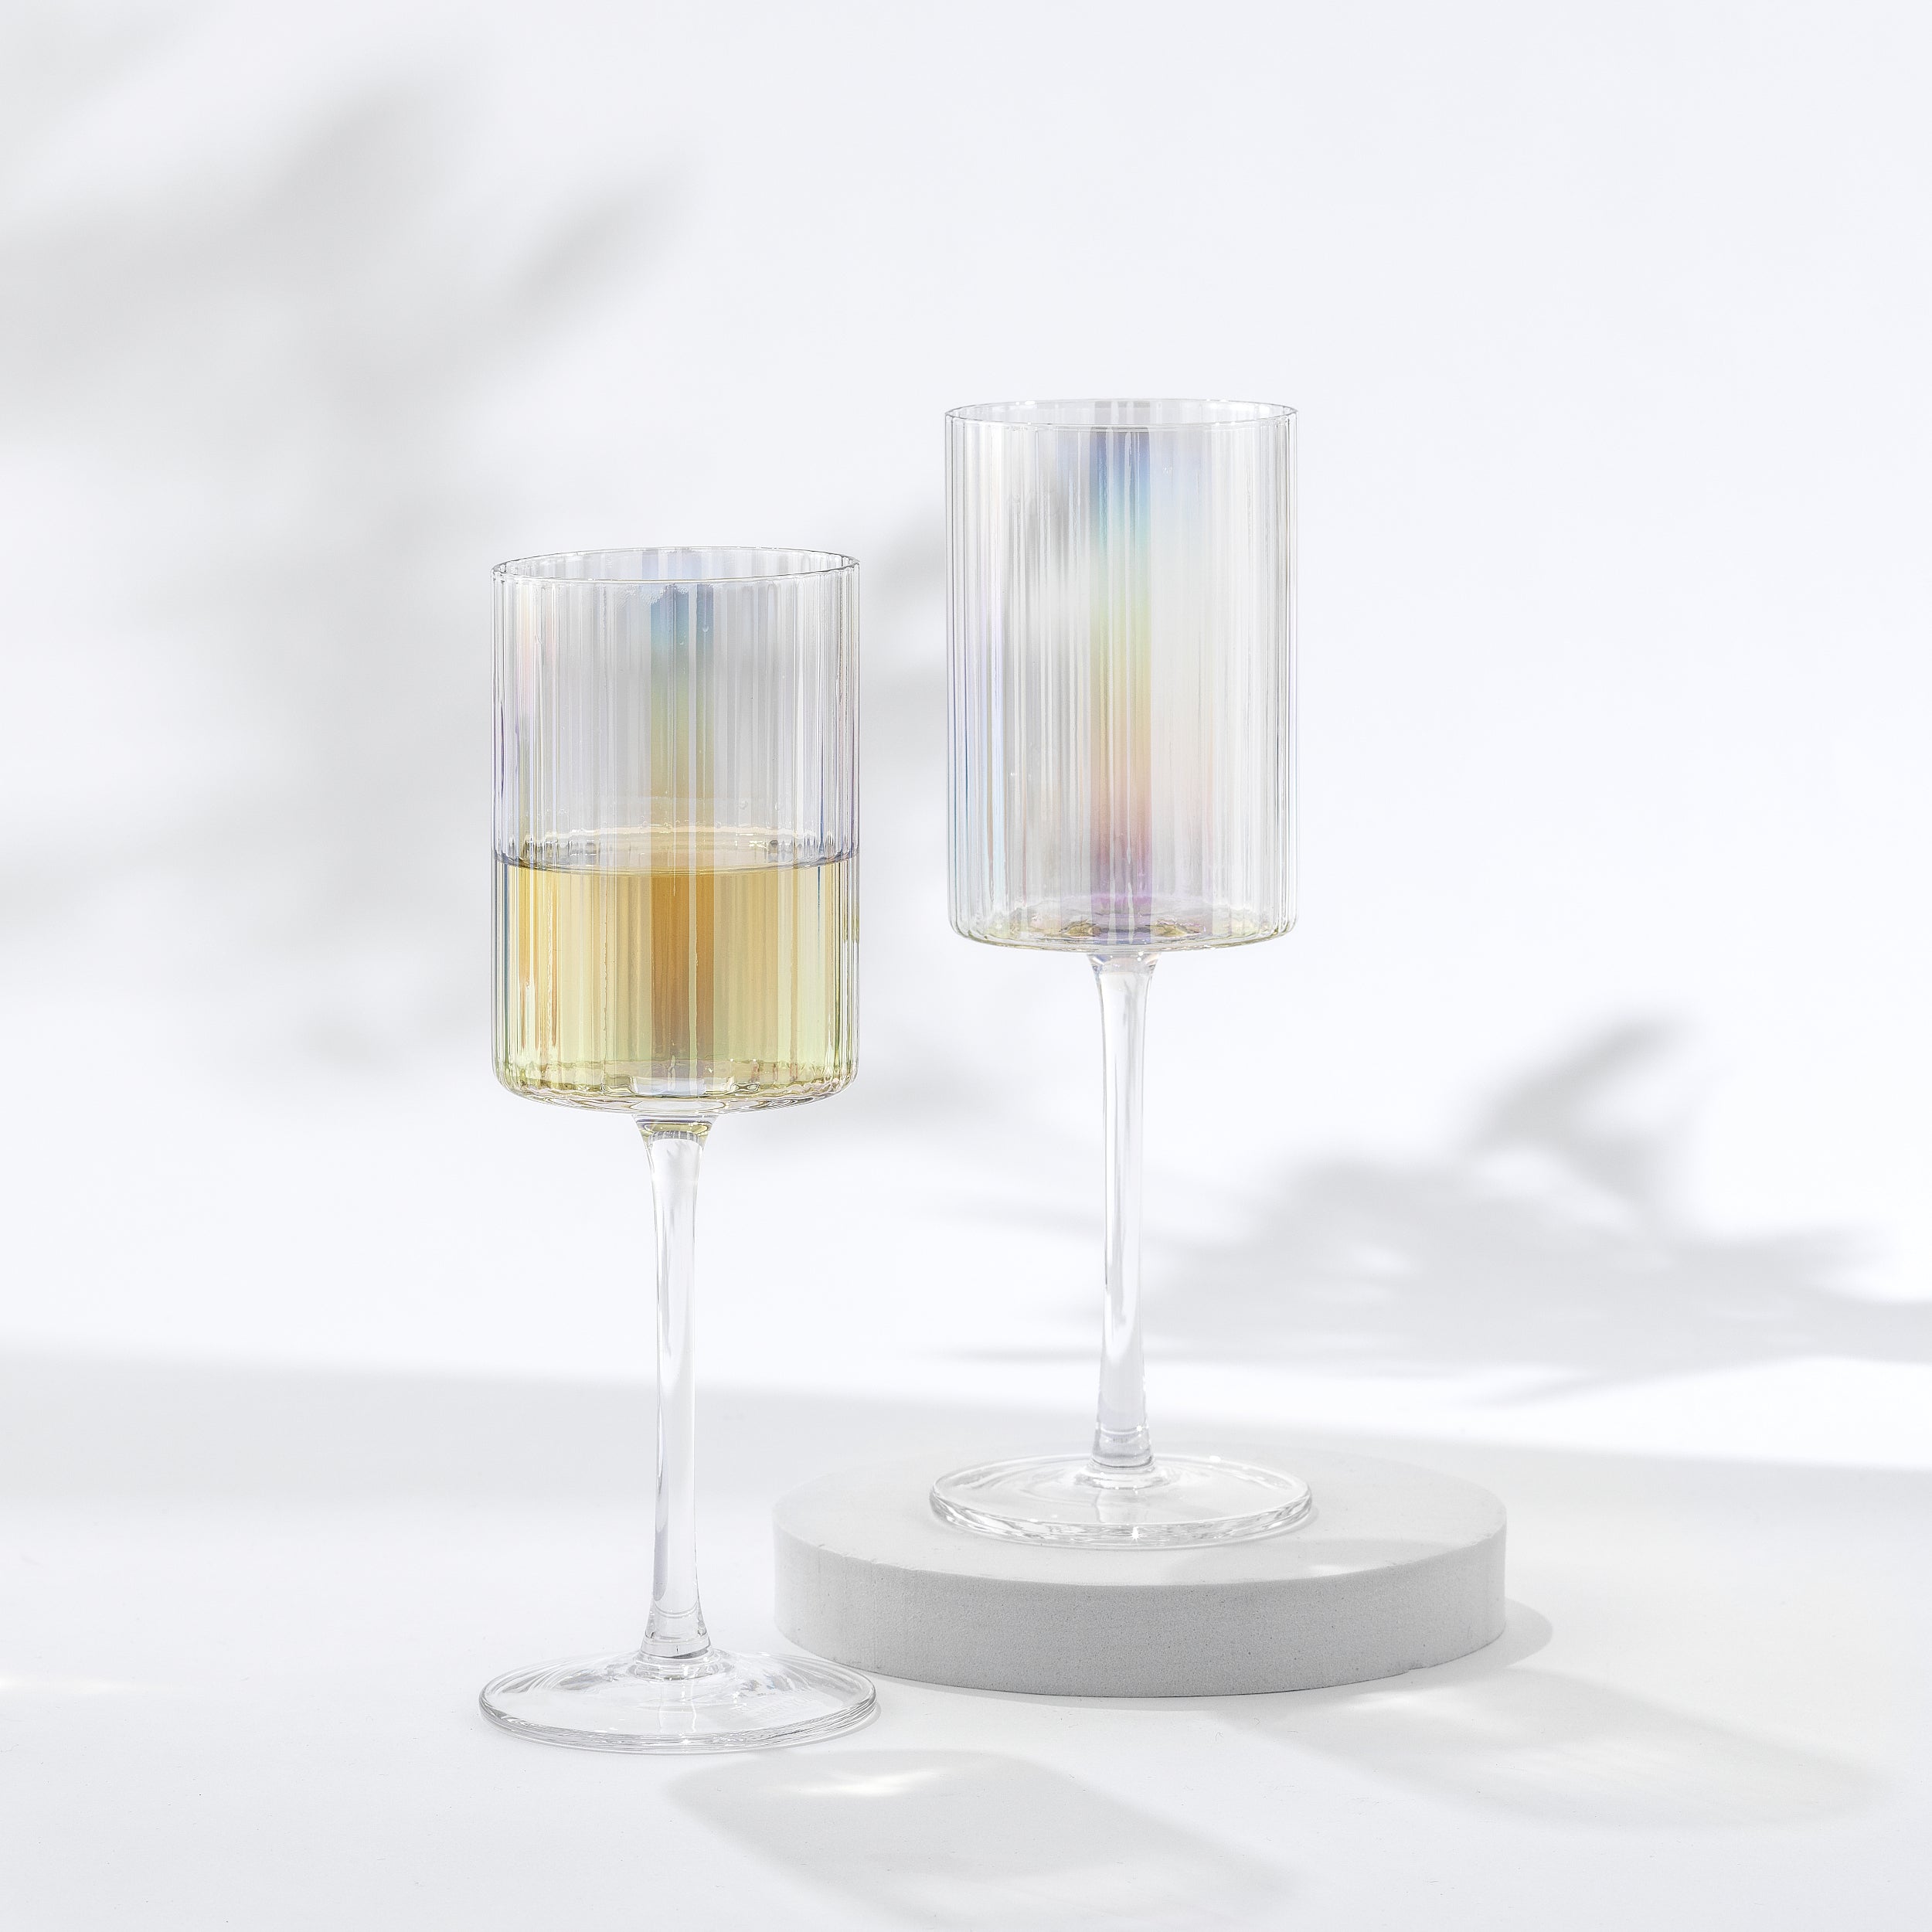 Christian Siriano New York Chroma Iridescent White Wine Glass Set